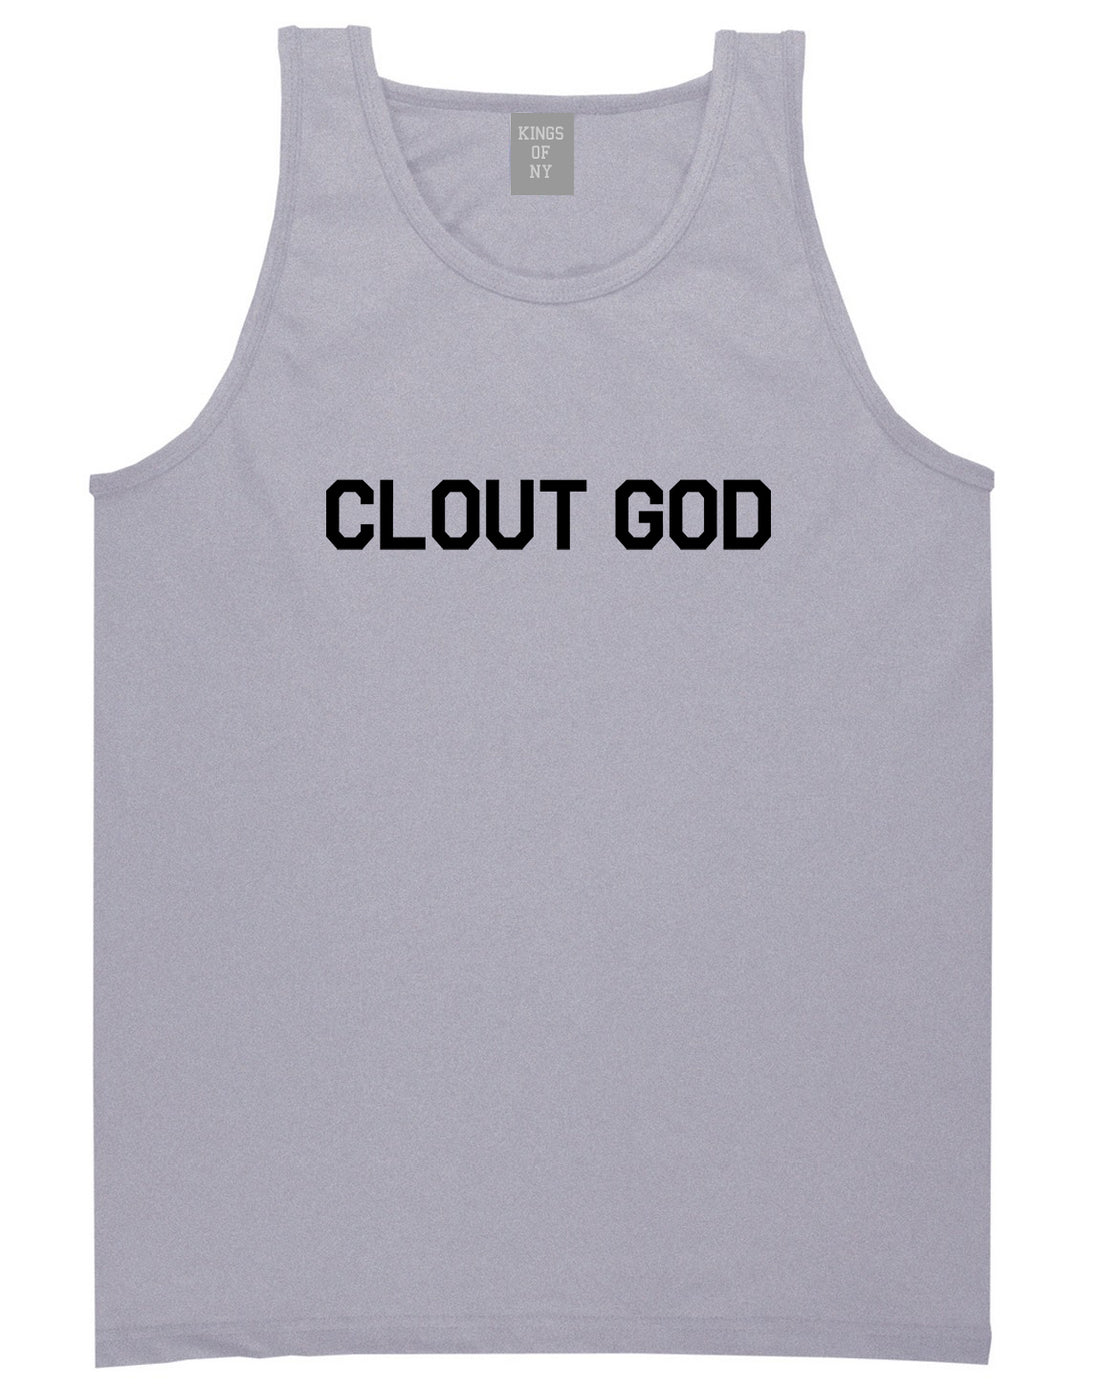 Clout God Mens Tank Top Shirt Grey by Kings Of NY